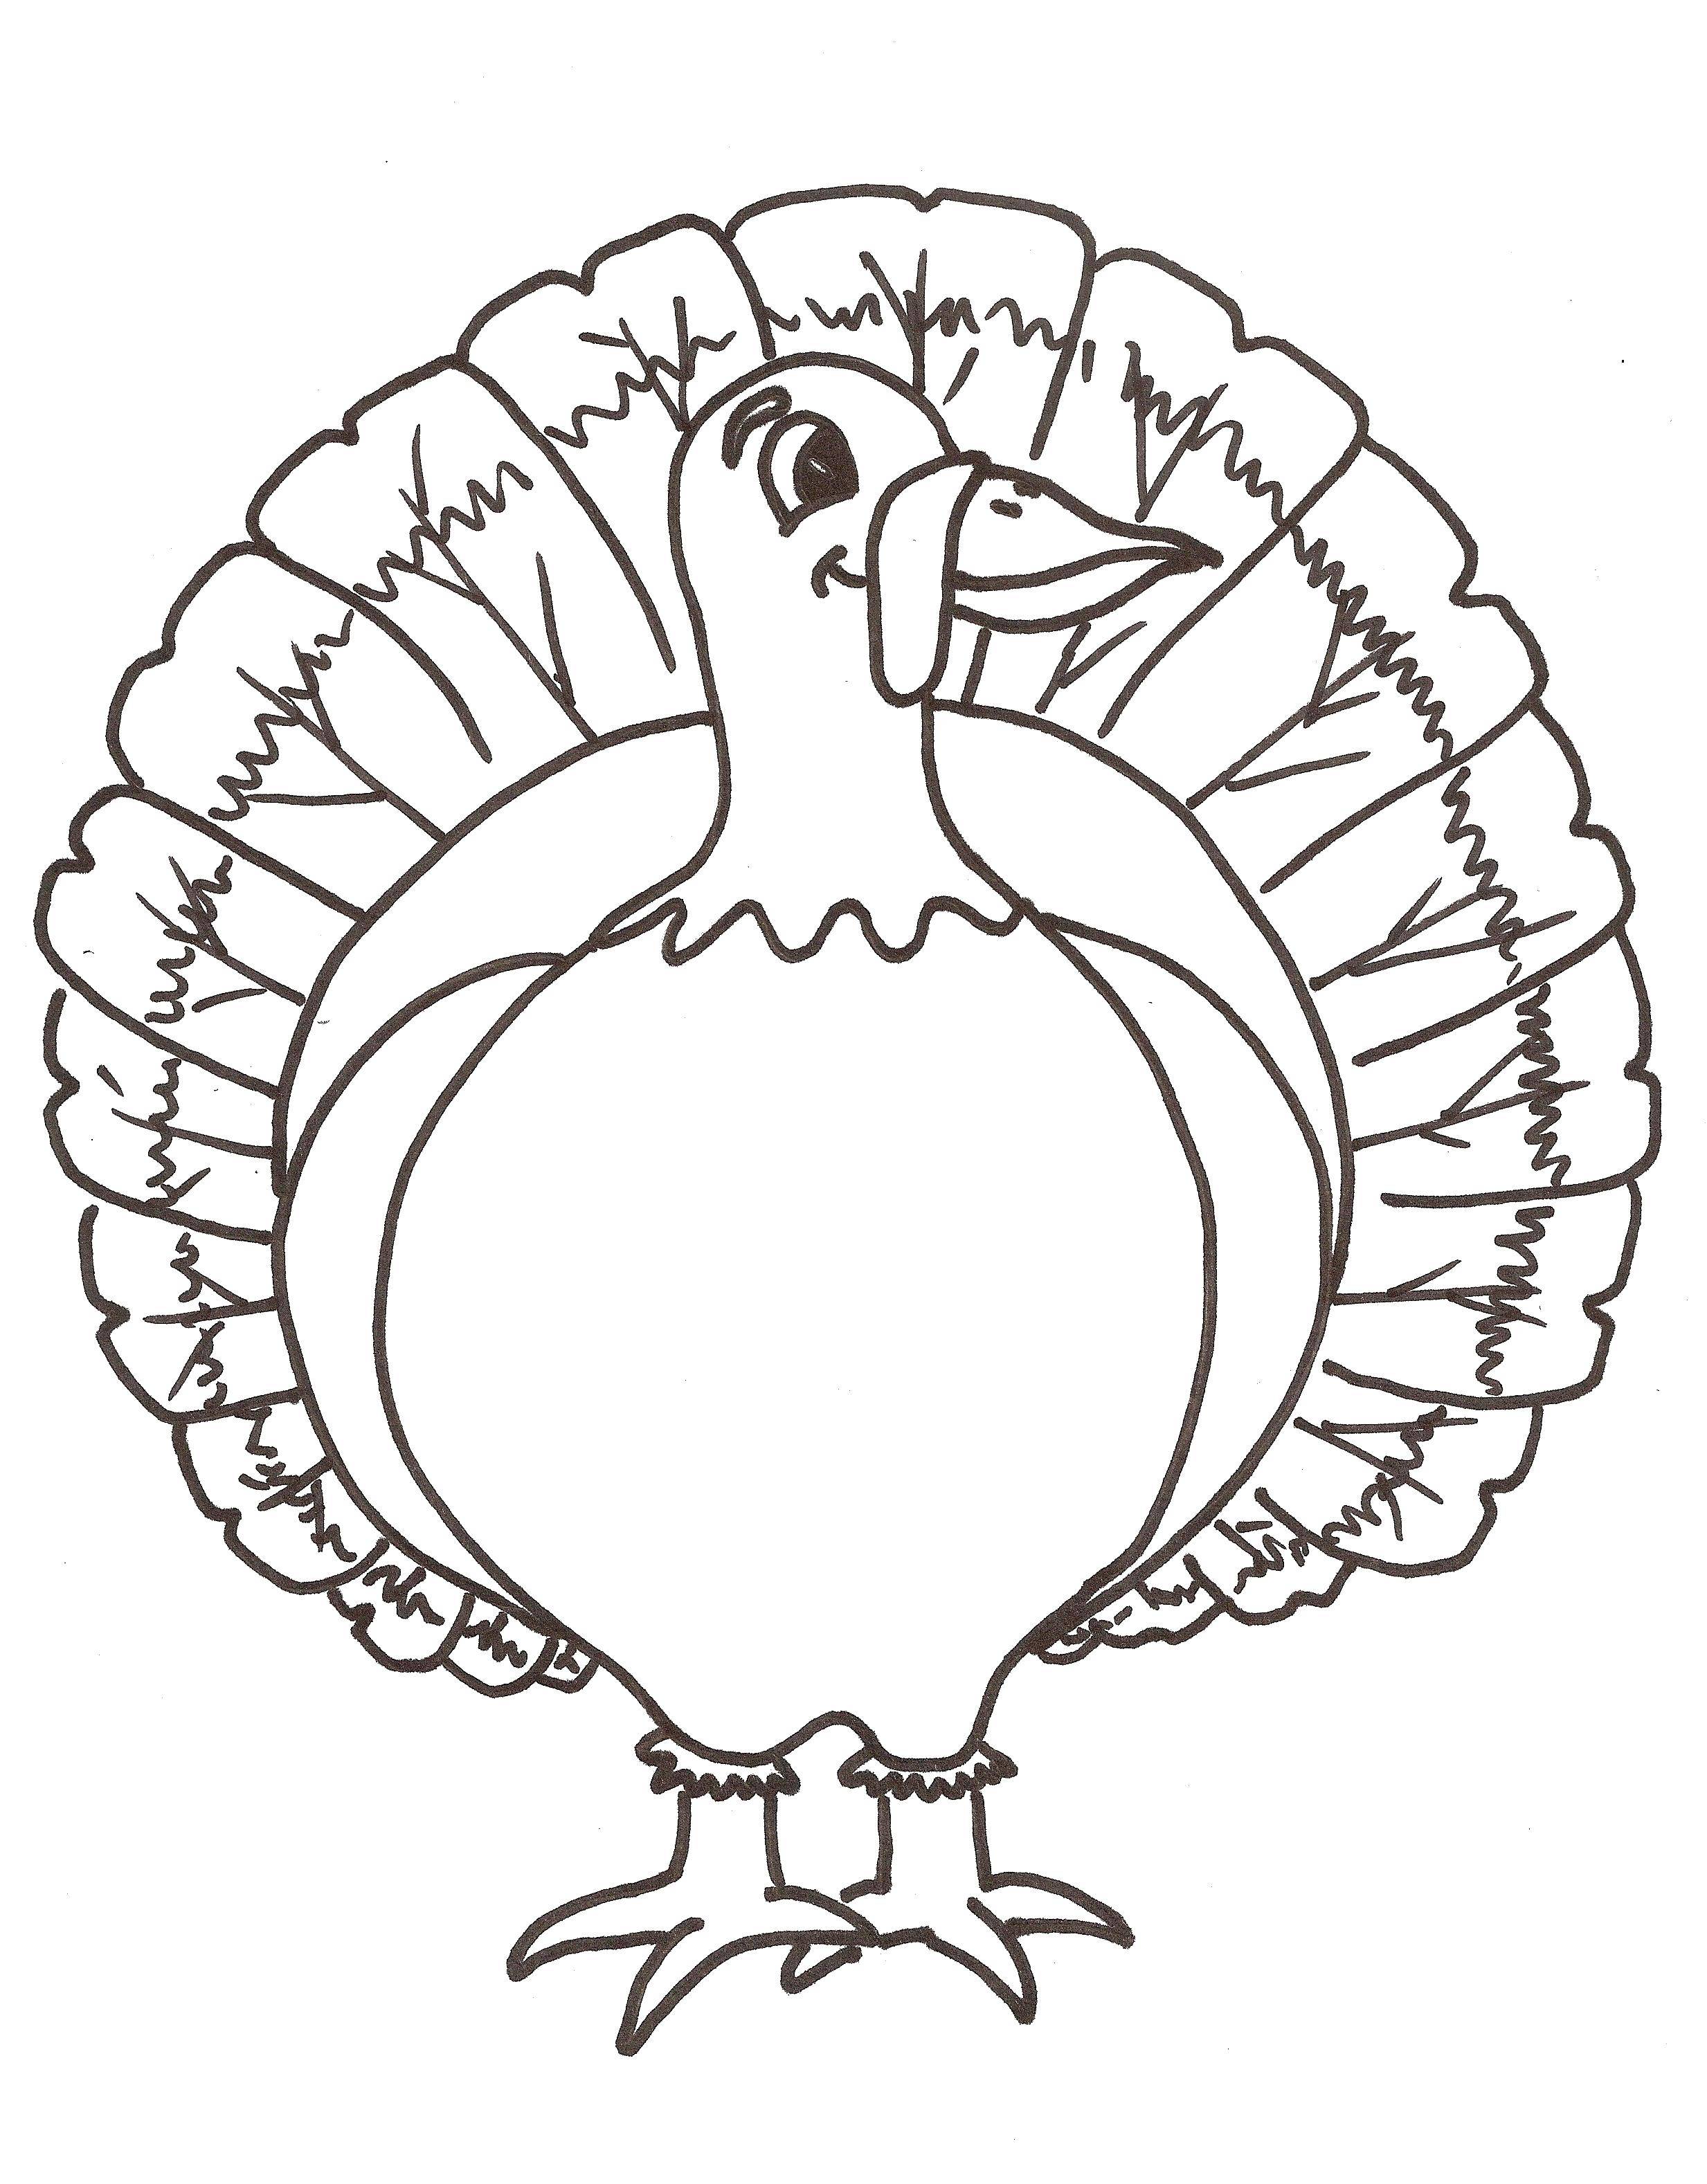 Coloring Honey Turkey. Category birds. Tags:  poultry, turkeys.